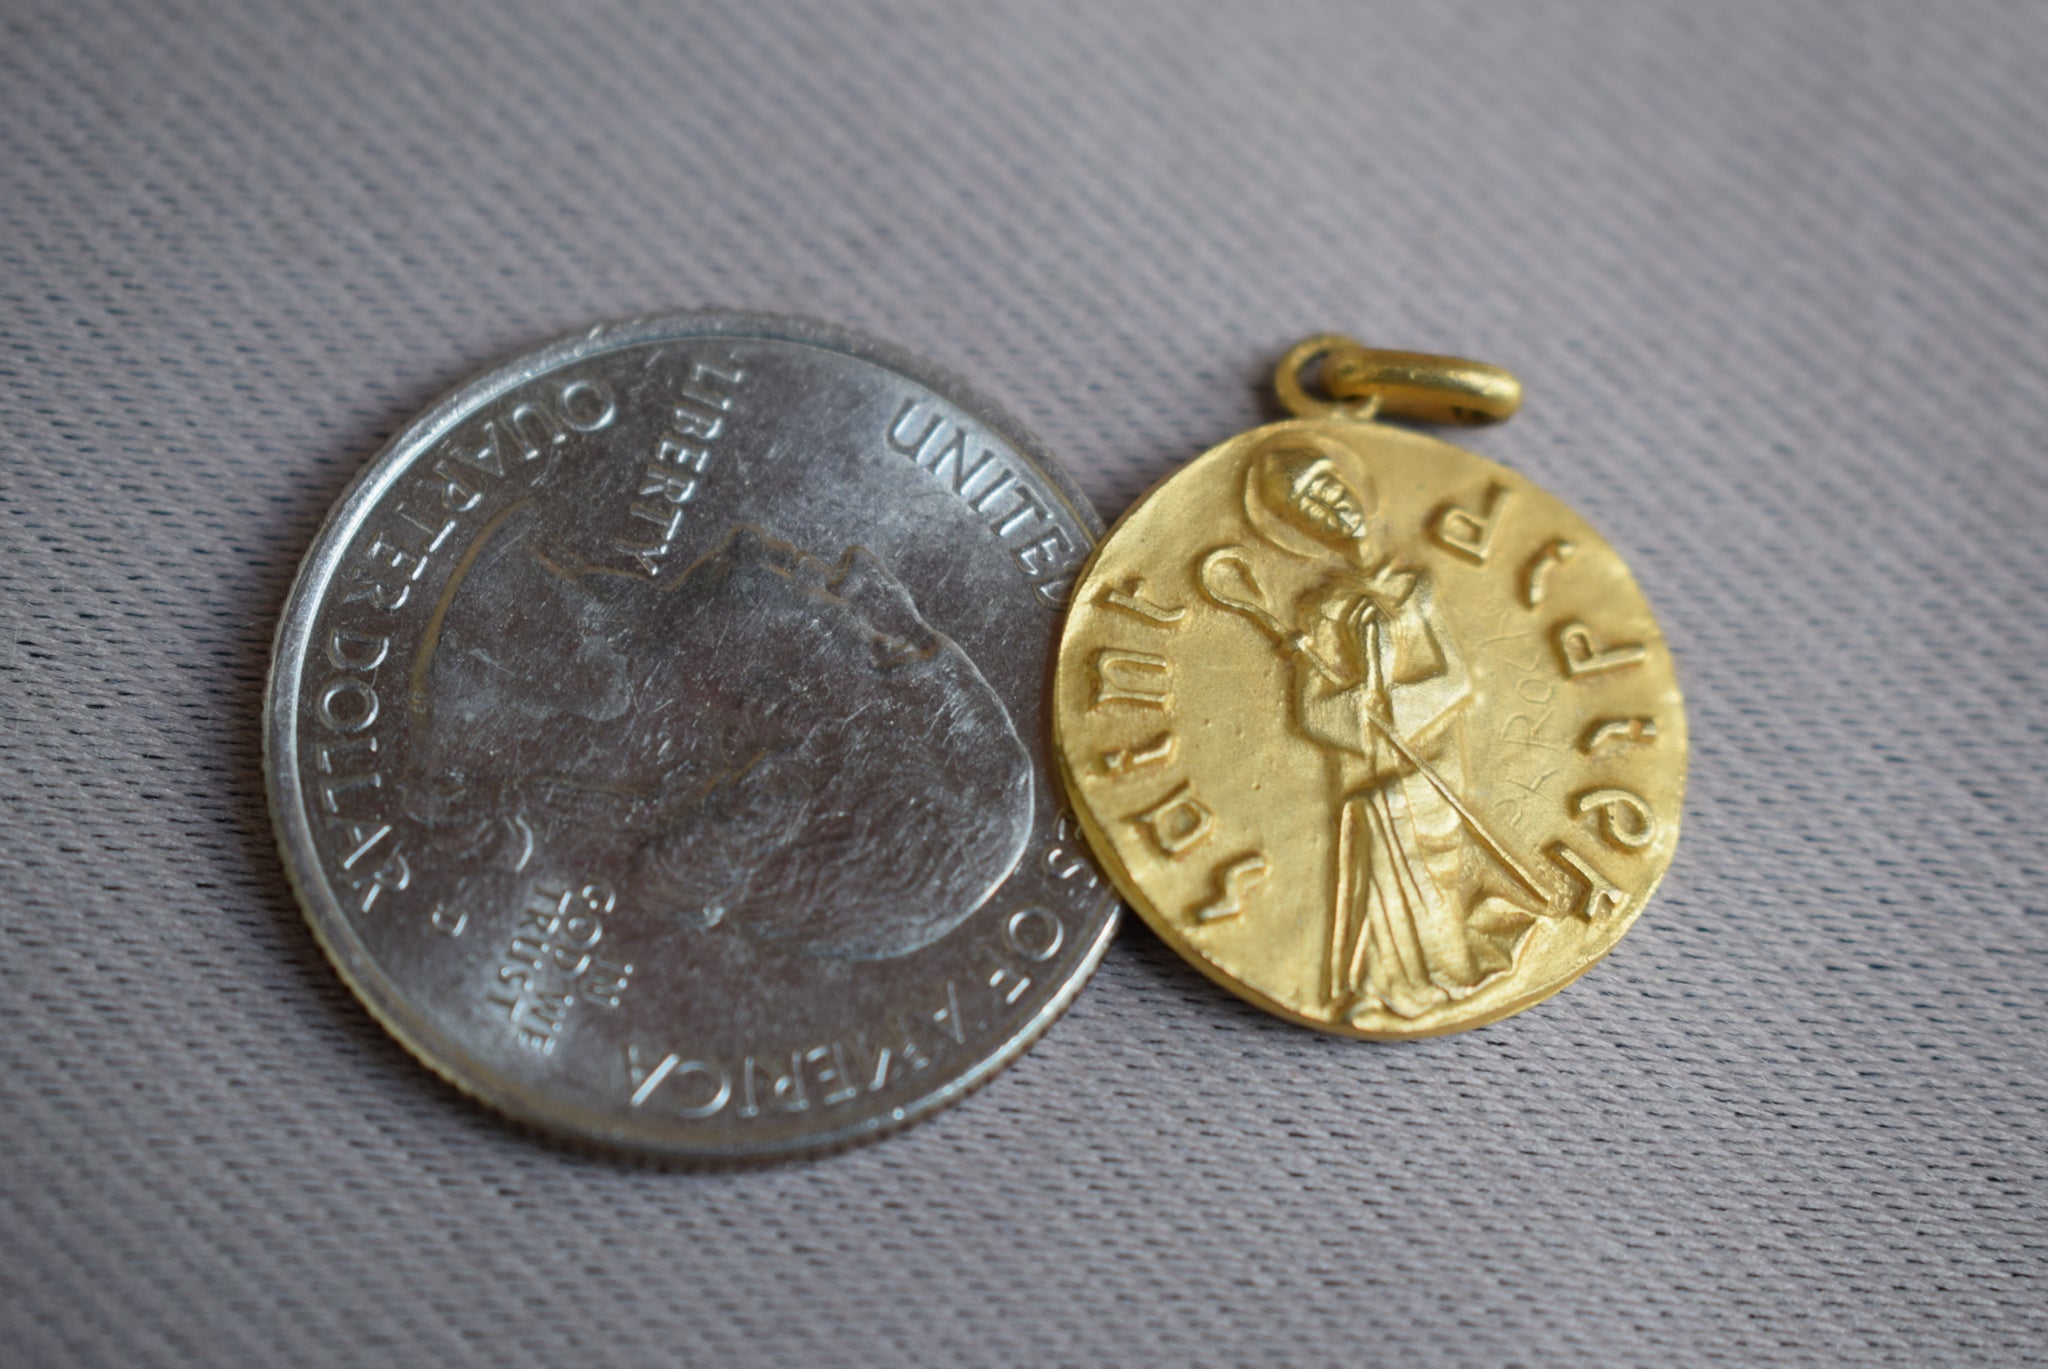 Saint Didier Medal - Charmantiques